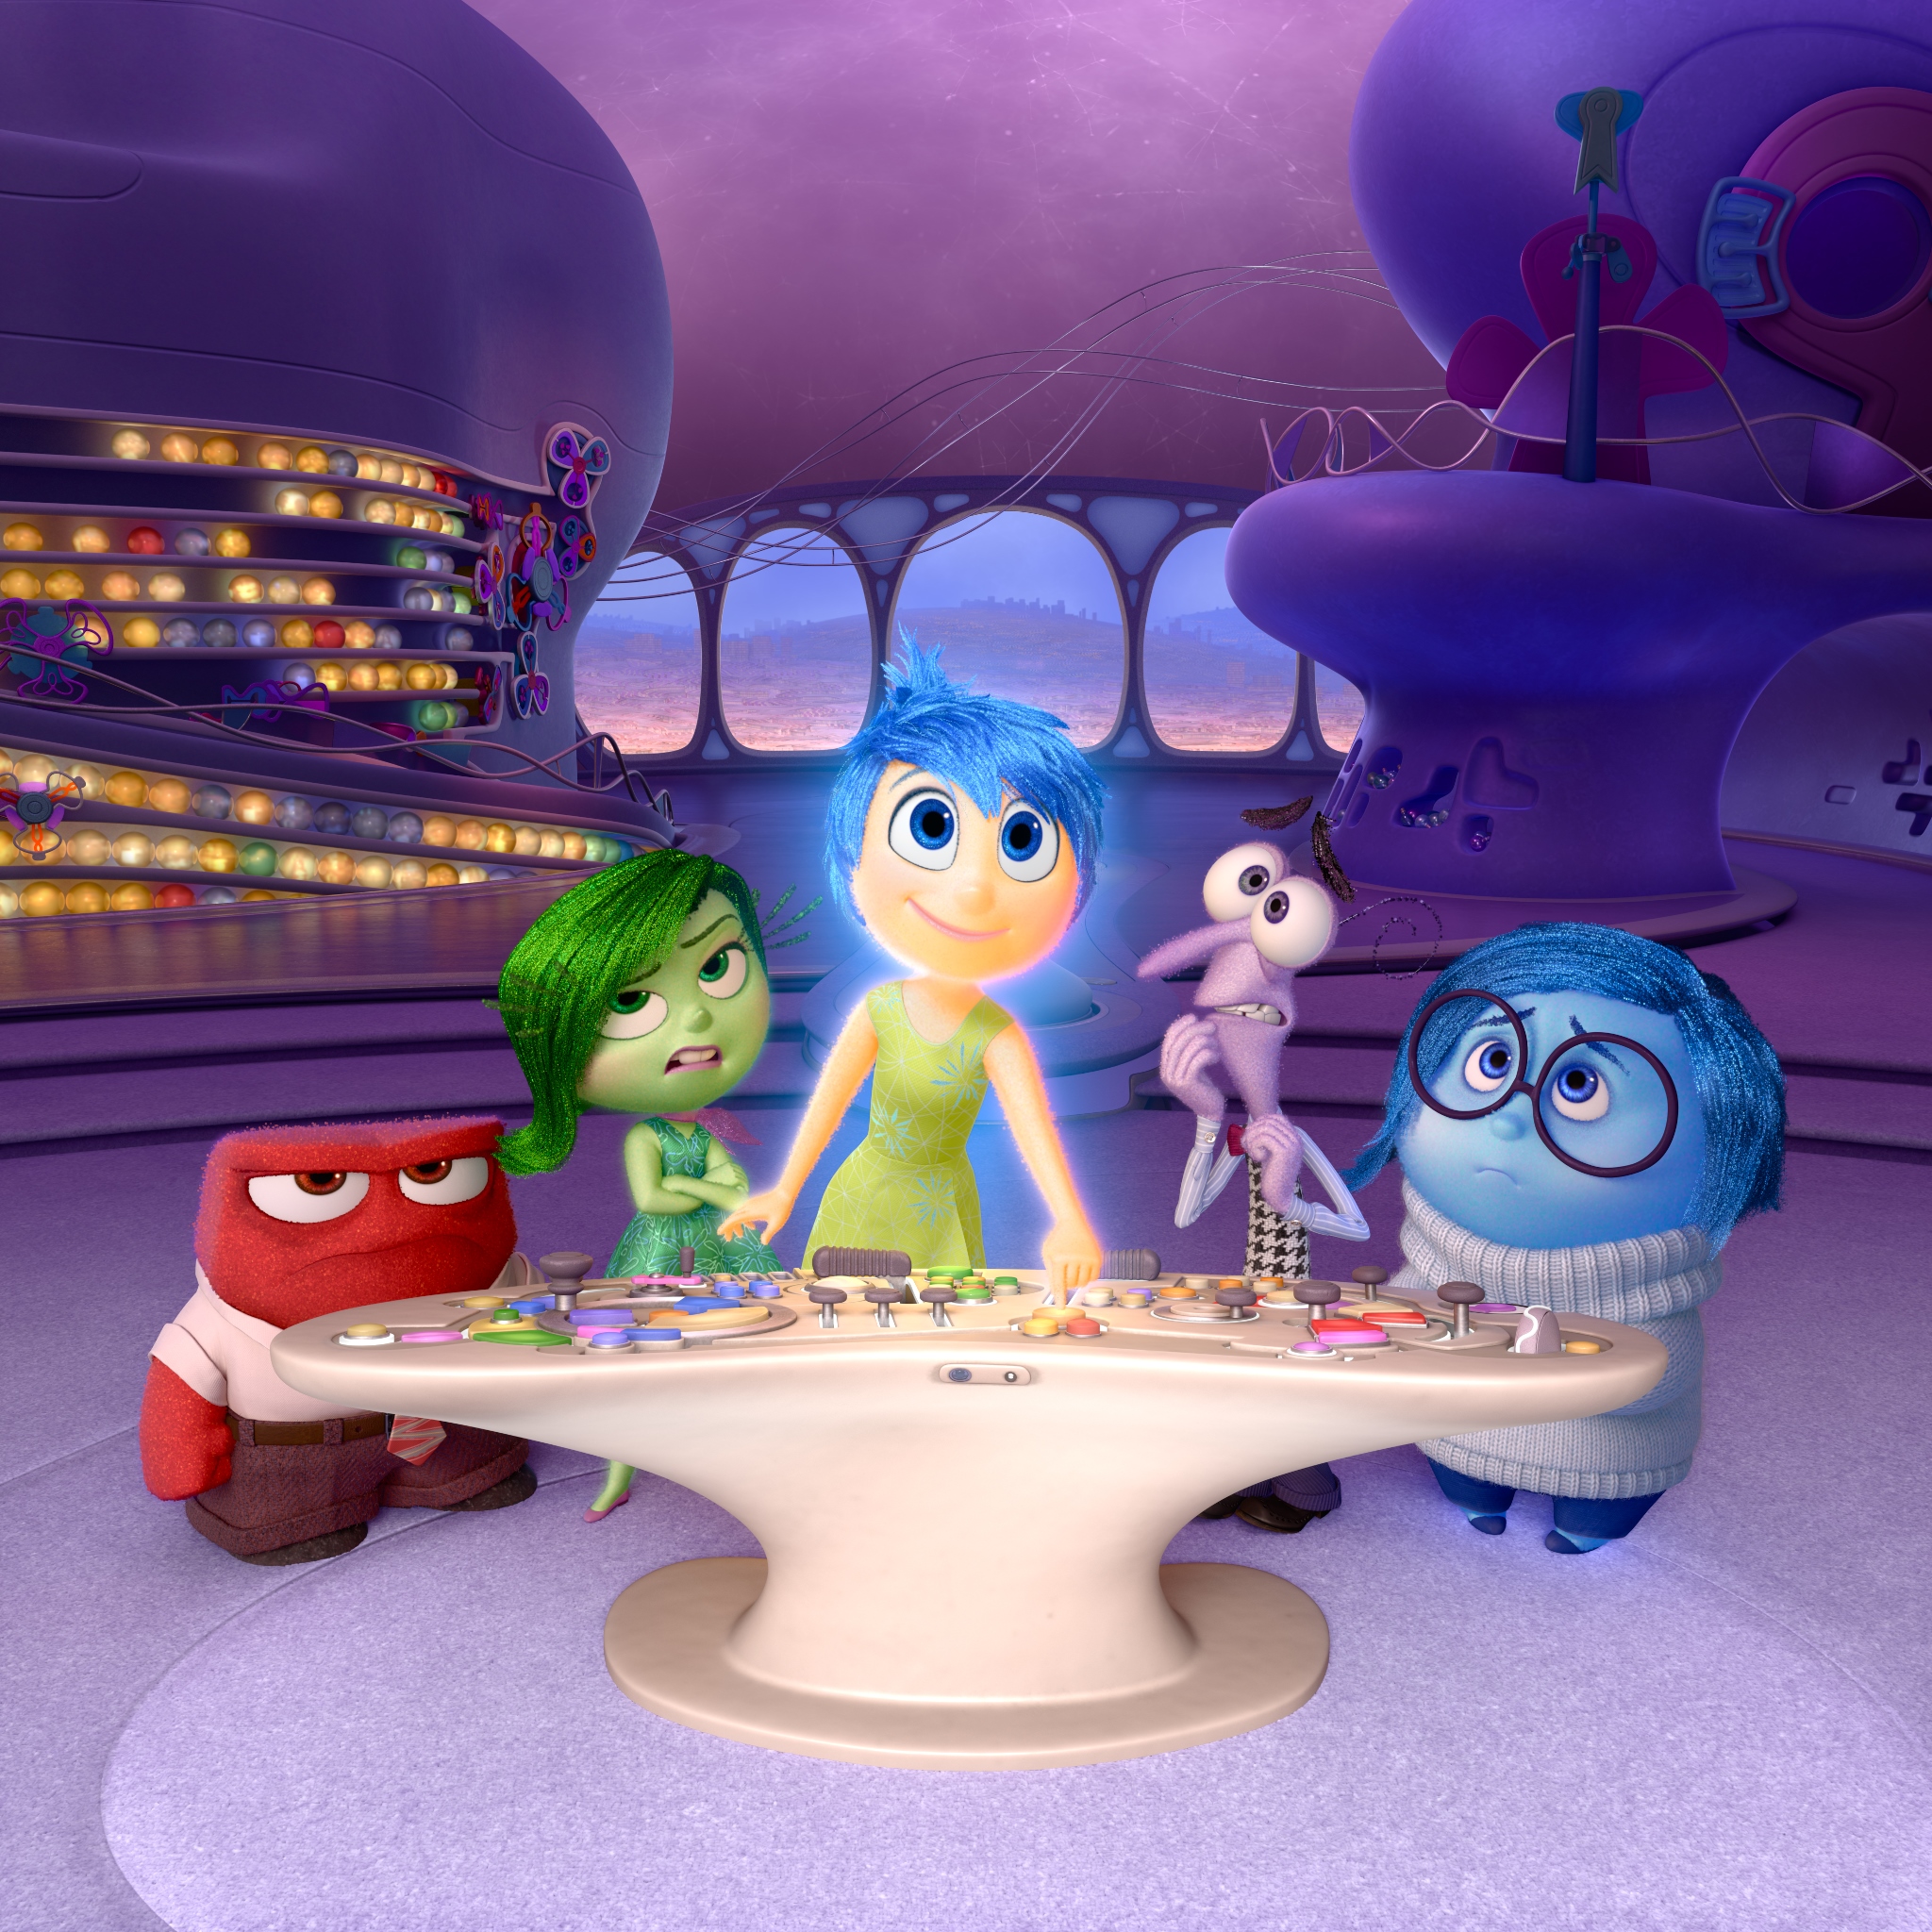 Трейлер мультфильма Pixar «Головоломка»

	 